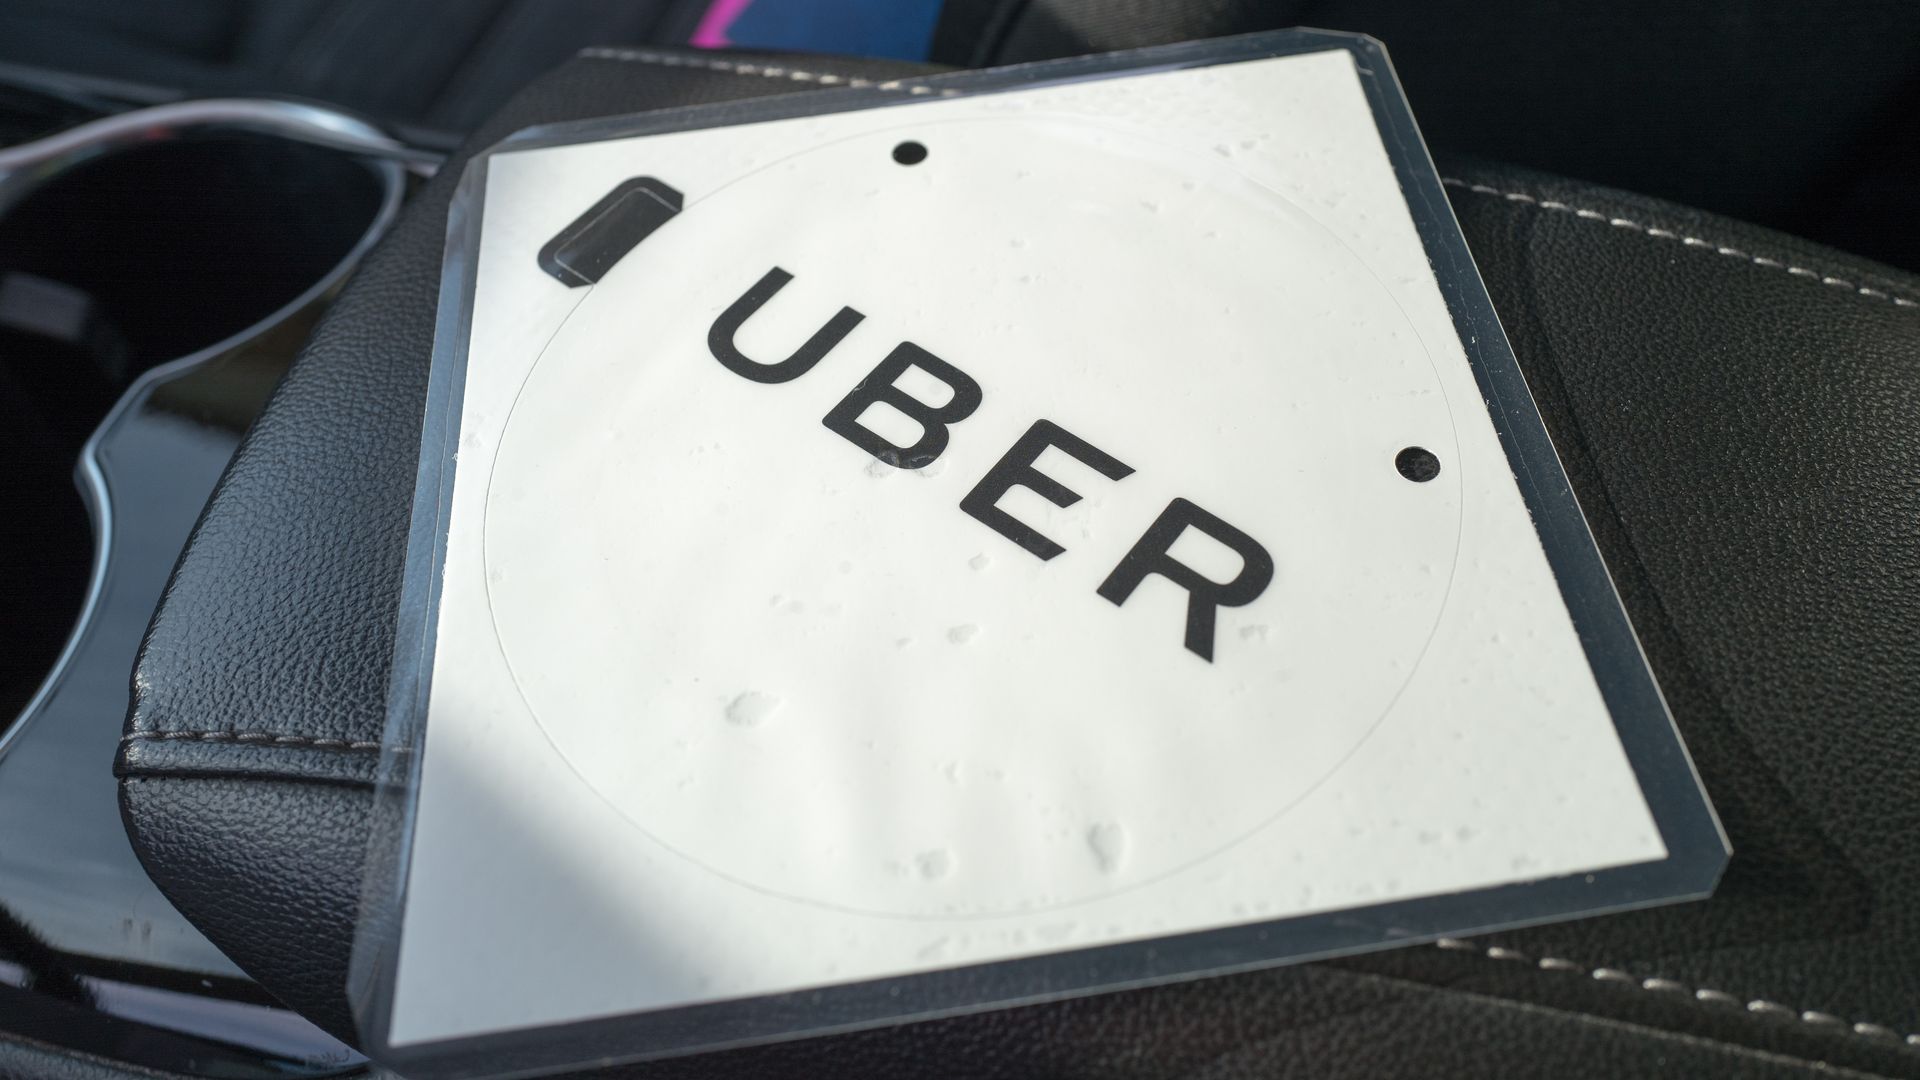 Laminated folder with the Uber logo on it